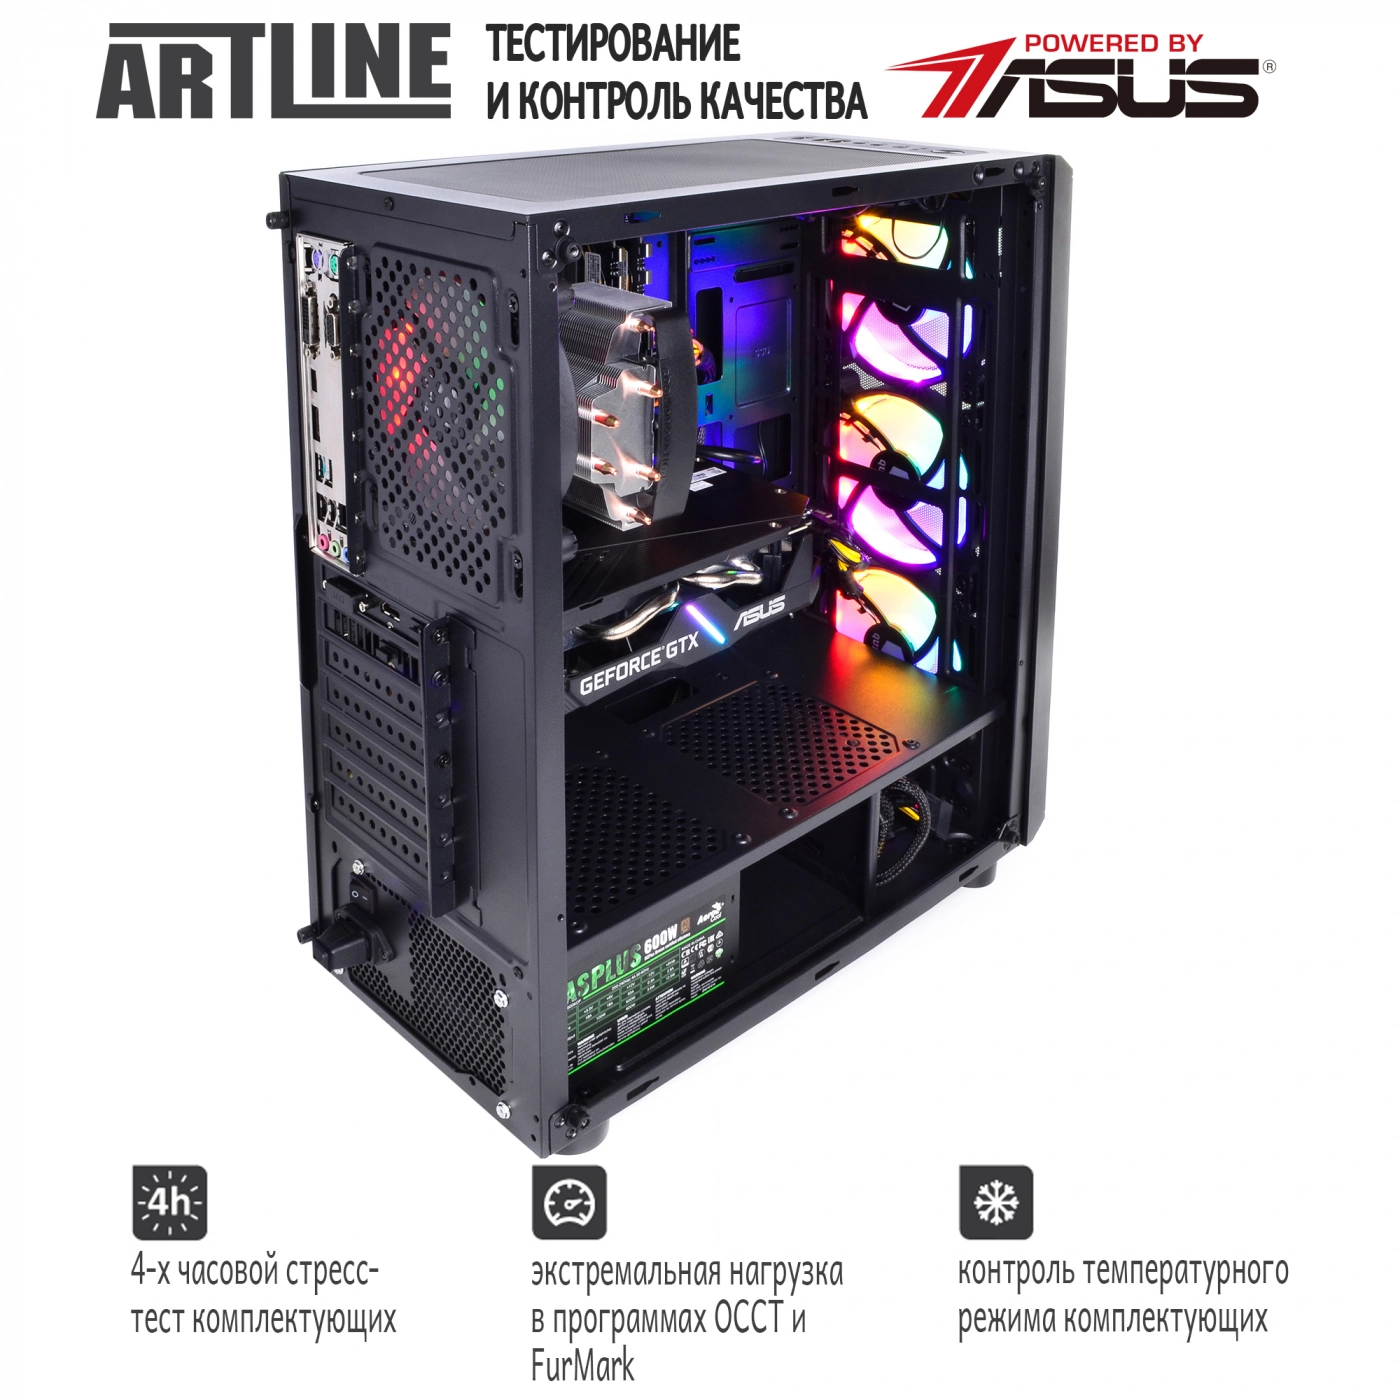 Купить Компьютер ARTLINE Gaming X68v07 - фото 8